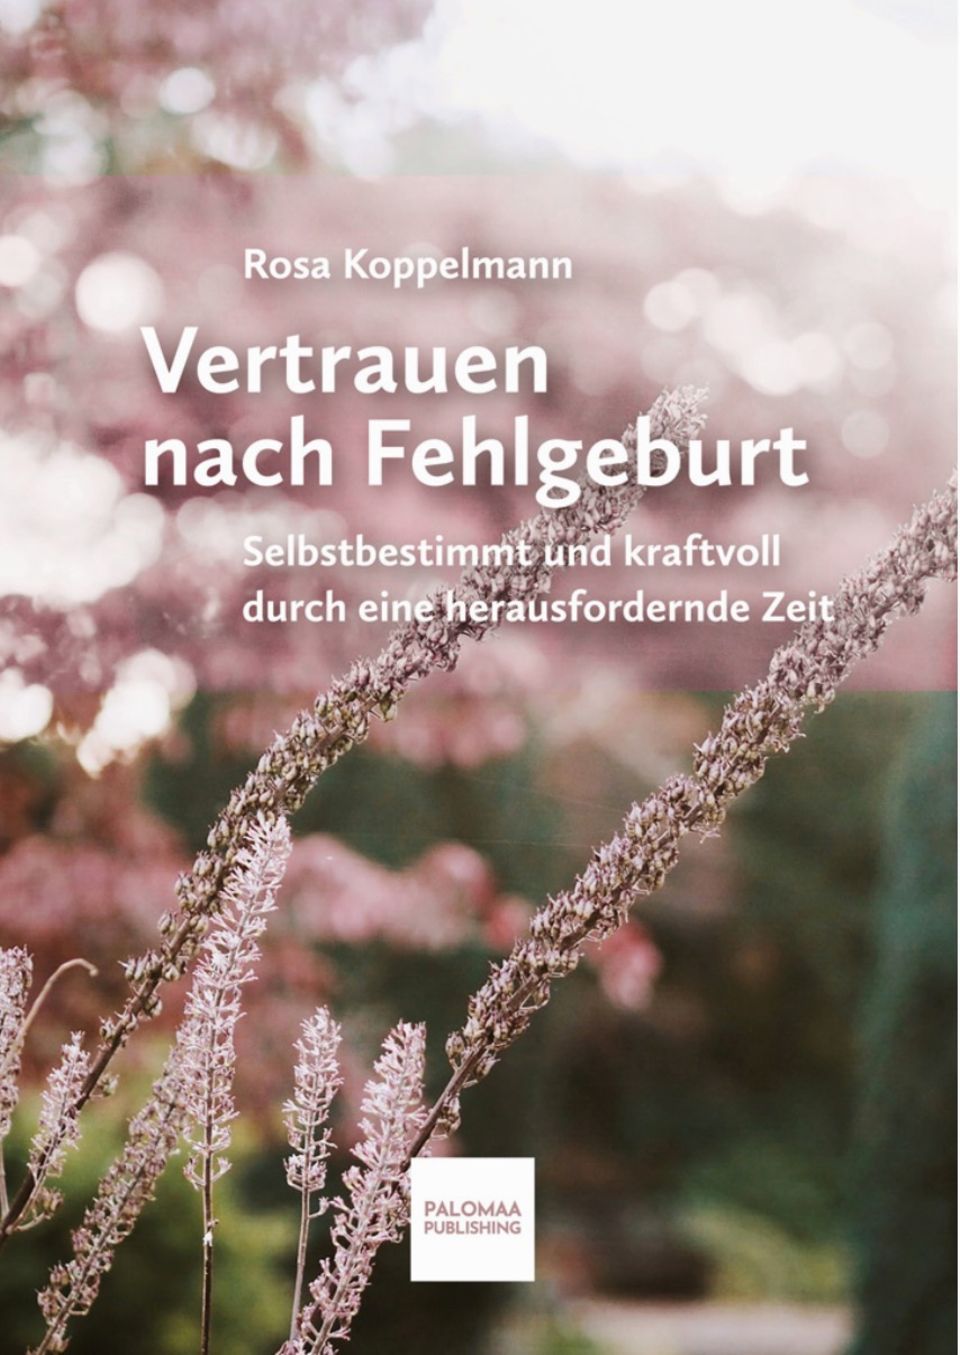 Rosa Koppelmann - Vertrauen nach Fehlgeburt: Cover